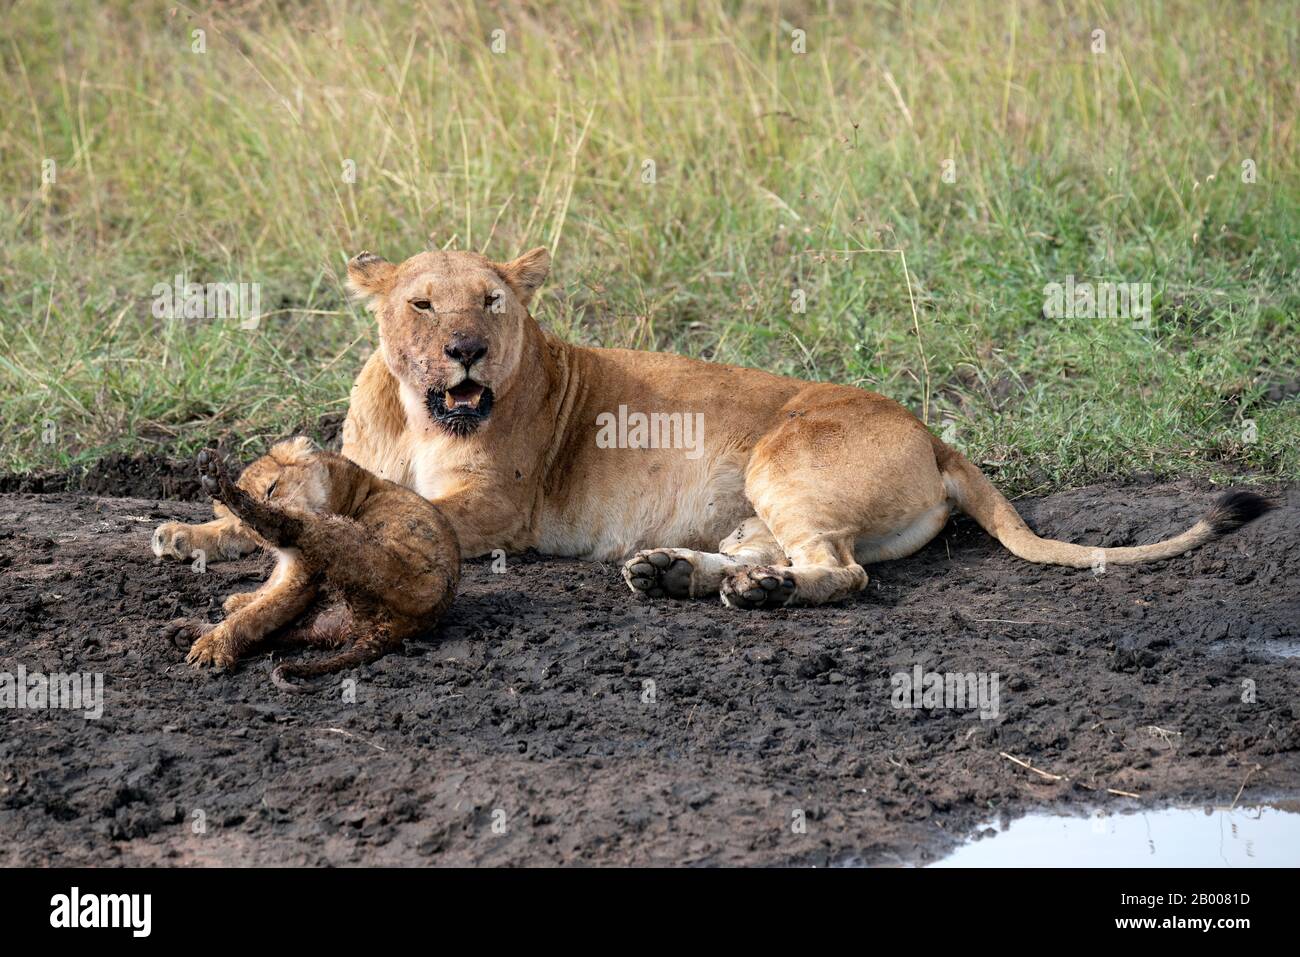 Madre y bebé León descansando en el barro después de una comida Foto de stock